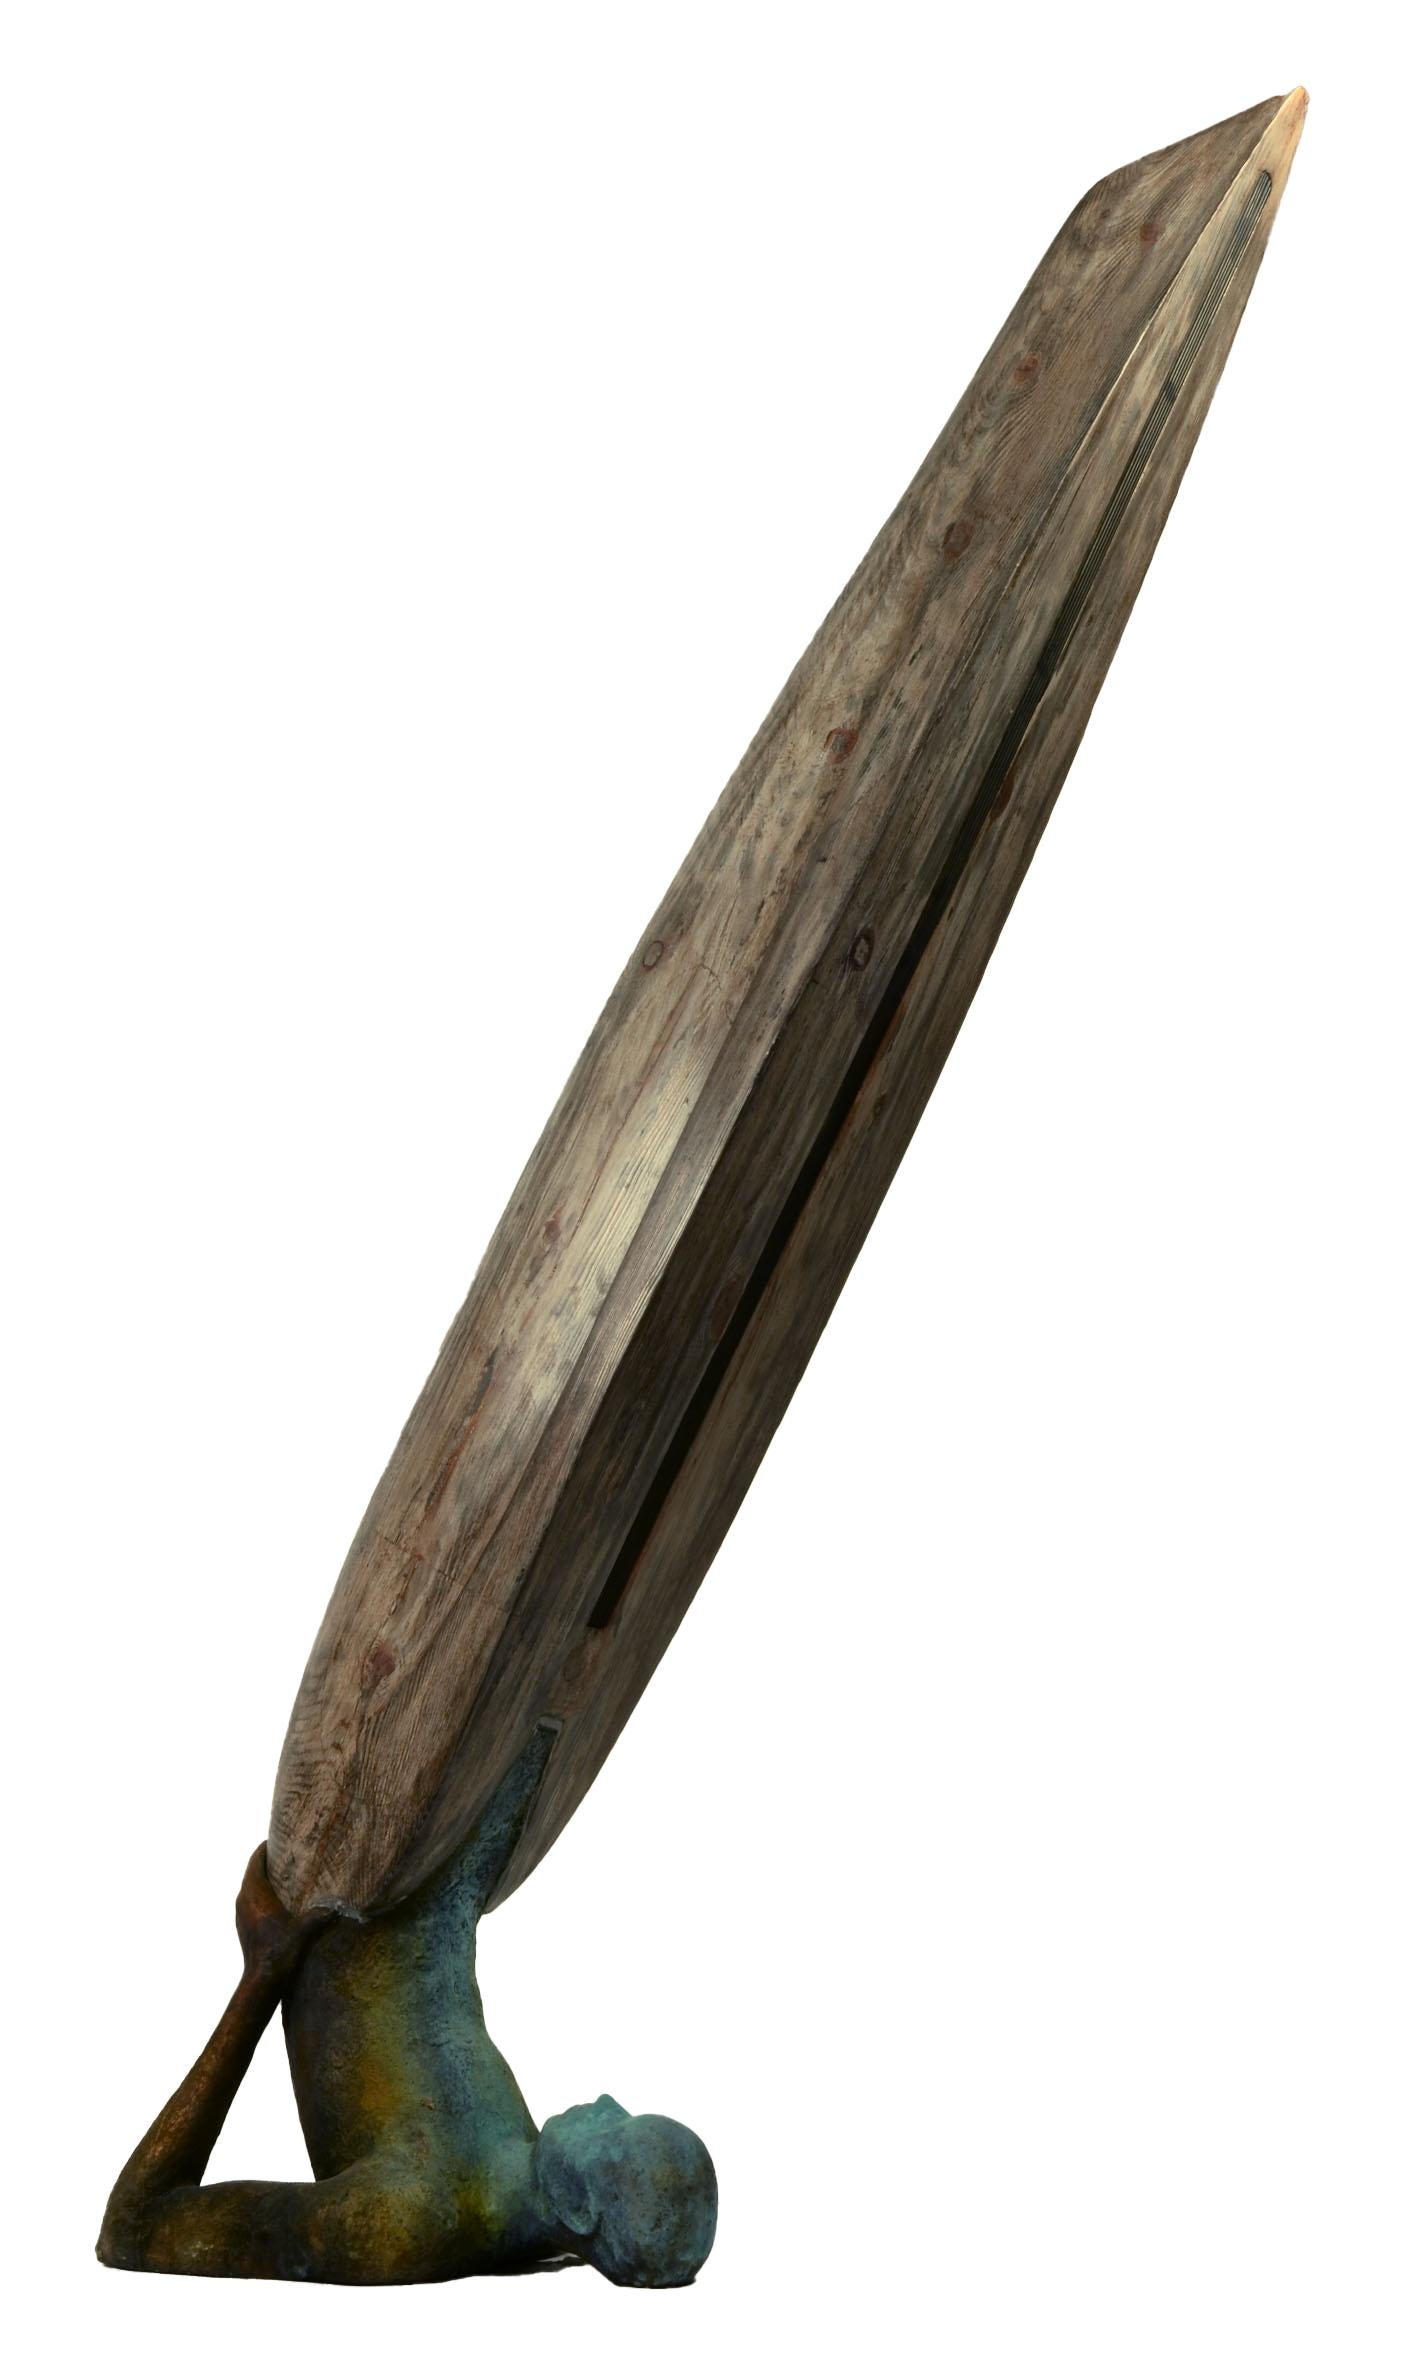 Inspiriert durch den Schulterstand im Yoga, auch bekannt als Sarvangasan, bringt Curiá eine Abstraktion in die Pose, indem sich die Beine der Figur in ein Holzboot verwandeln.  Die Figur hat eine schöne grüne Patina, die an ihren Enden in einen